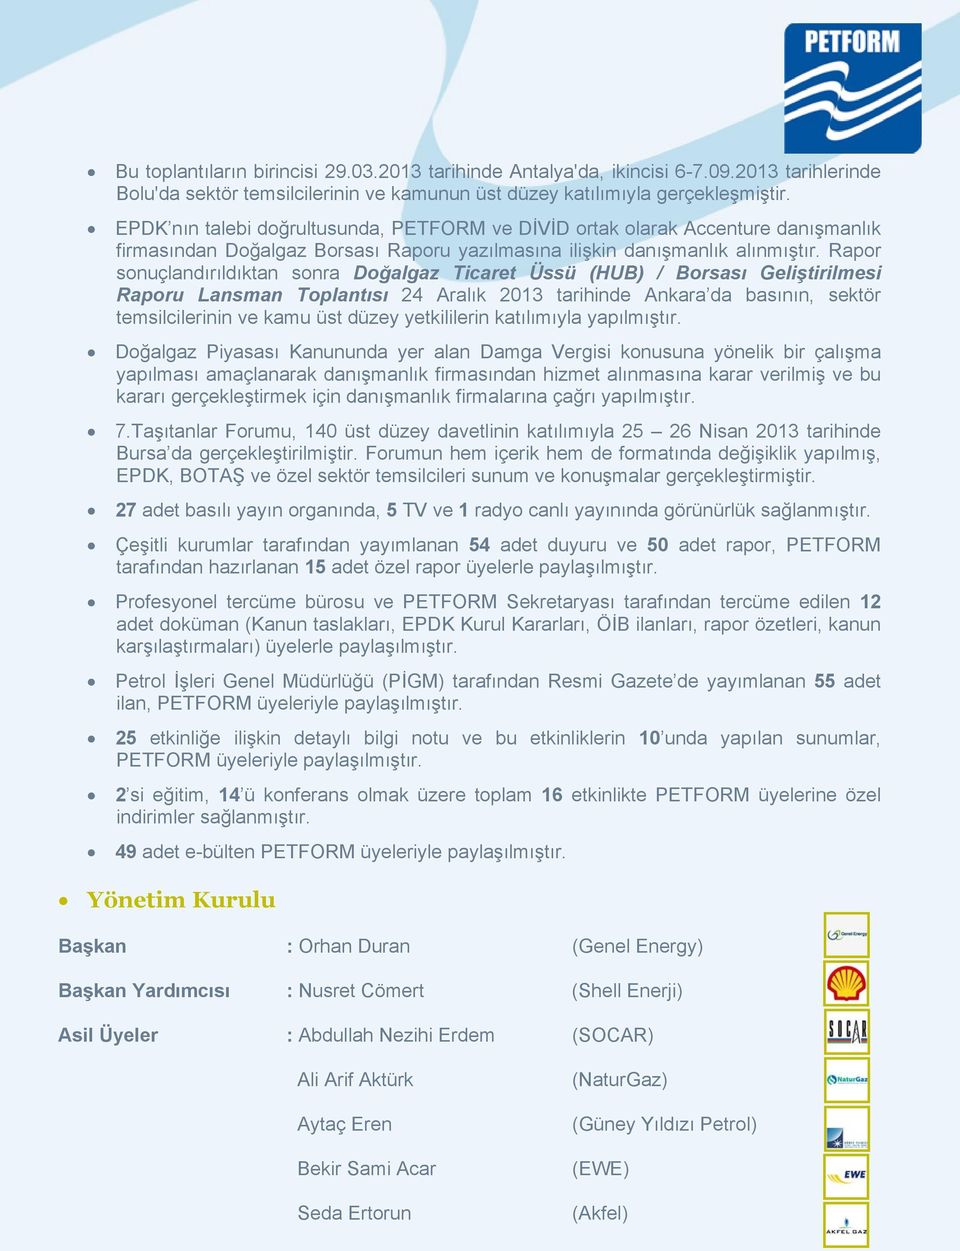 Rapor sonuçlandırıldıktan sonra Doğalgaz Ticaret Üssü (HUB) / Borsası Geliştirilmesi Raporu Lansman Toplantısı 24 Aralık 2013 tarihinde Ankara da basının, sektör temsilcilerinin ve kamu üst düzey